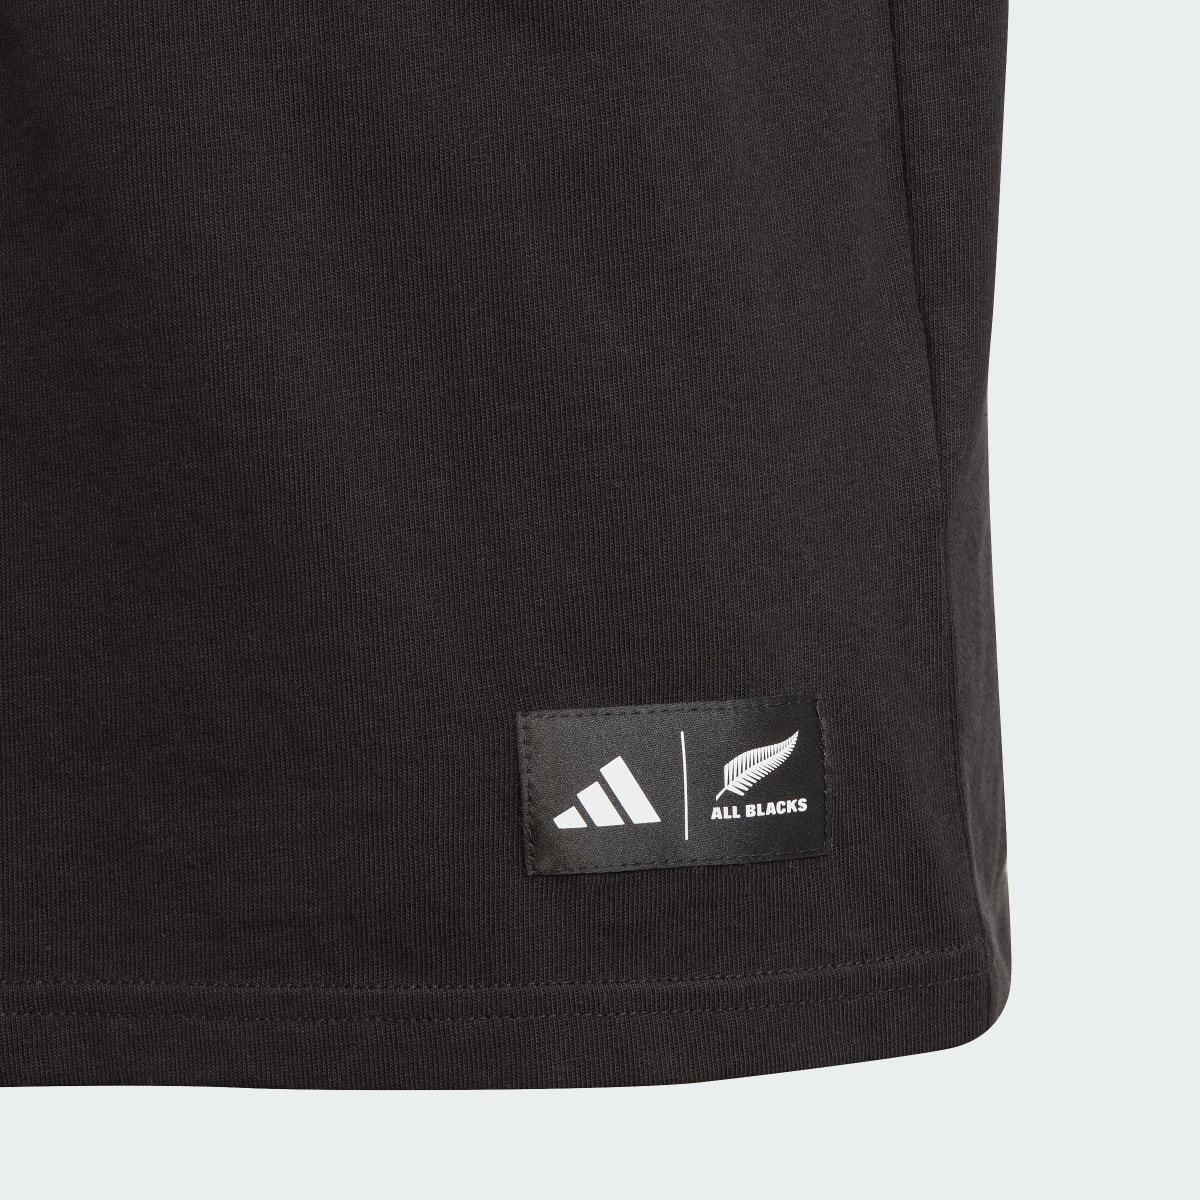 Adidas All Blacks Graphic T-Shirt. 4